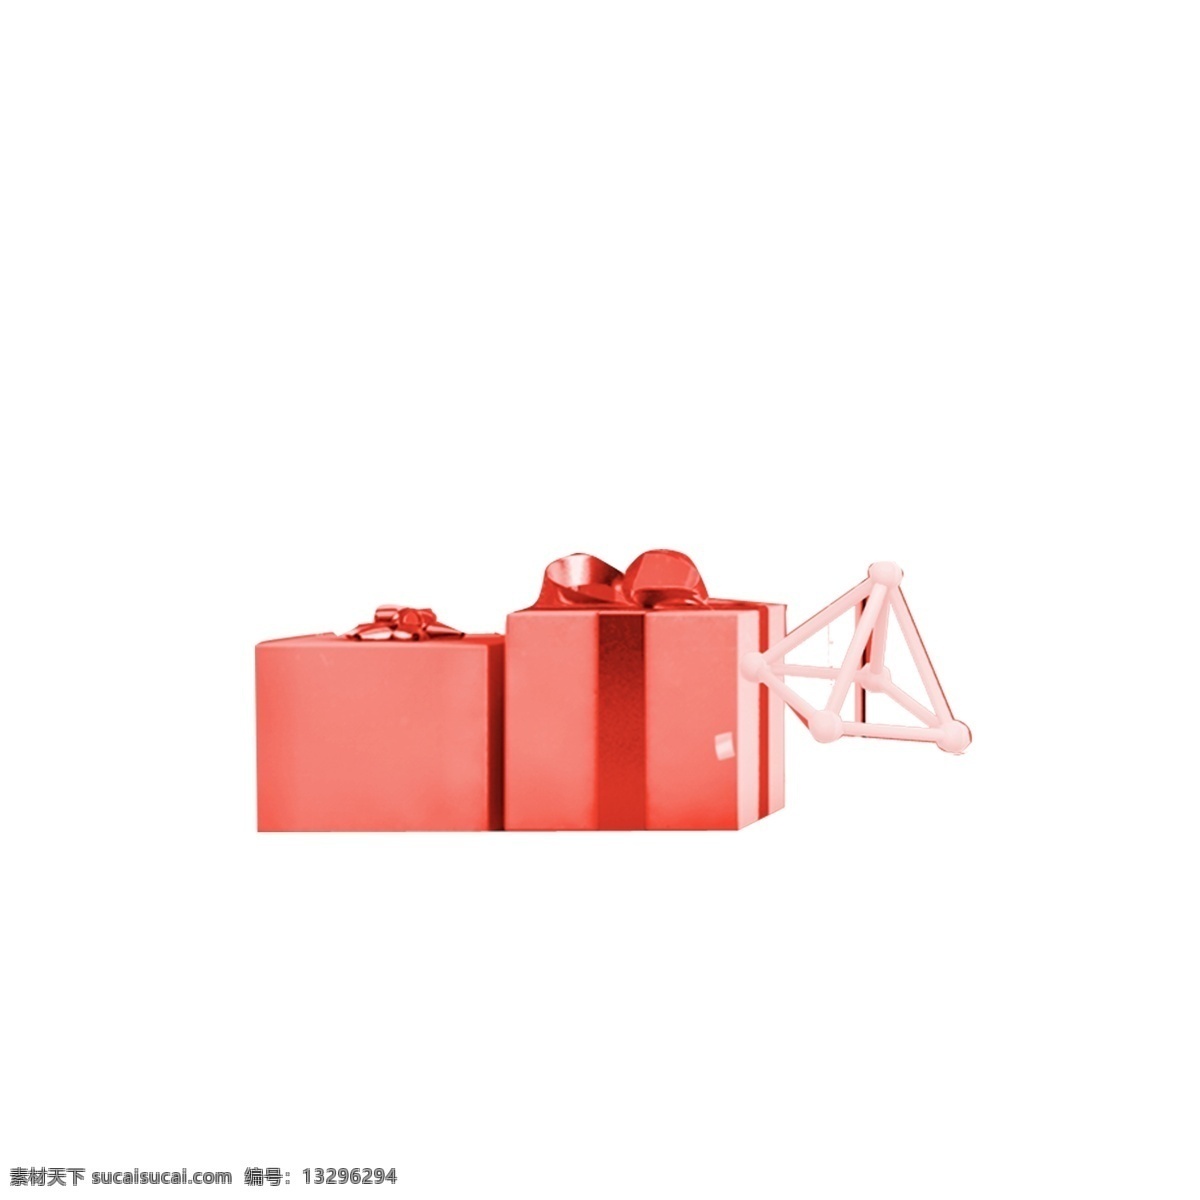 红色 礼品盒 免 抠 图 礼物包装盒 卡通图案 卡通插画 红色插画 二个礼品盒 红色的礼品盒 免抠图